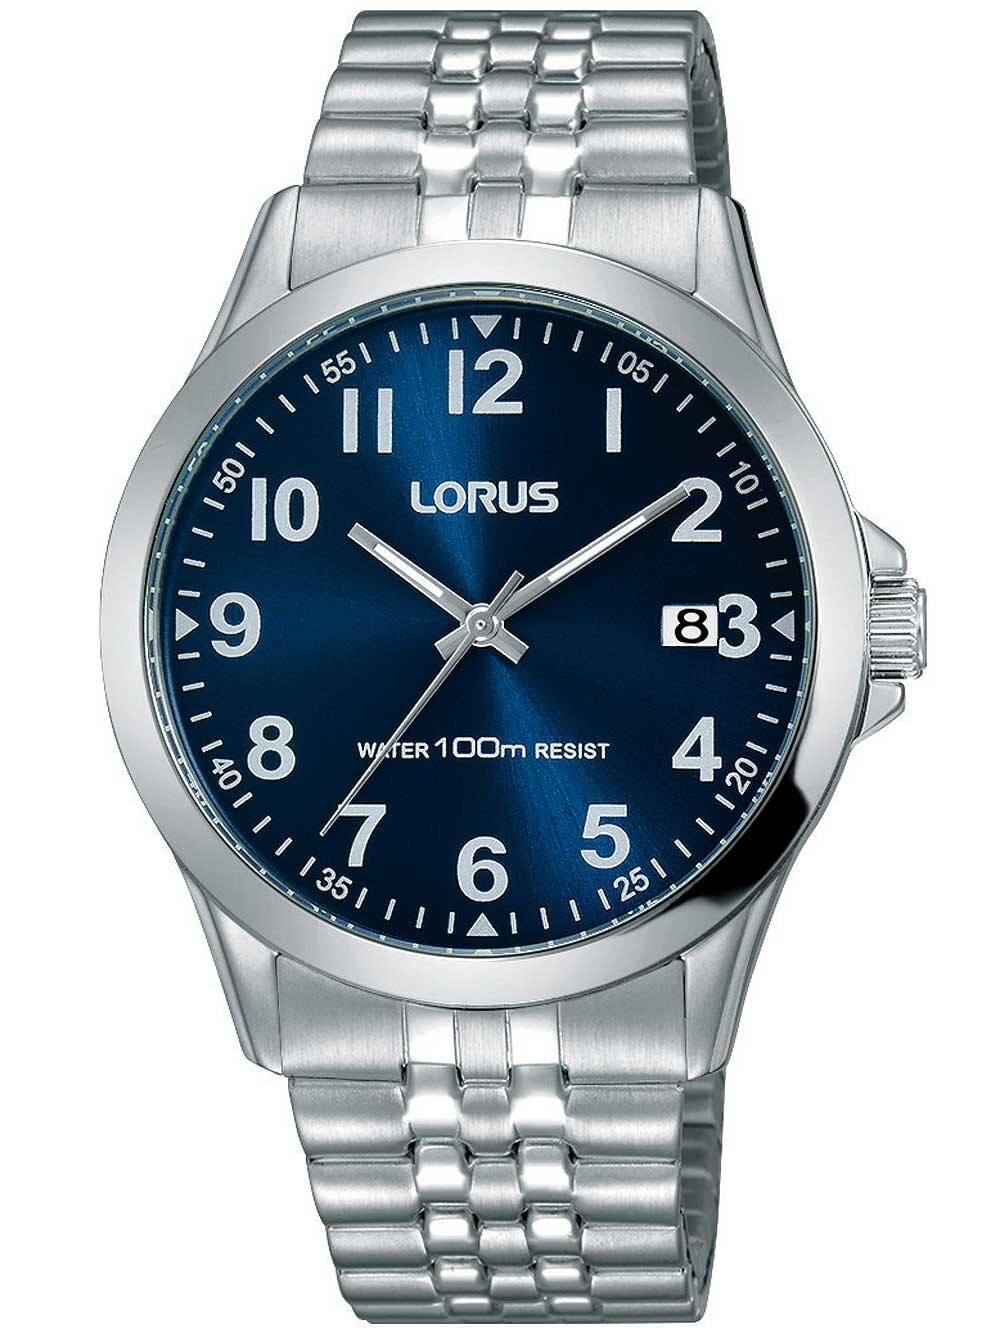 Мужские наручные часы с серебряным браслетом Lorus RS973CX9 Mens 38mm 10 ATM